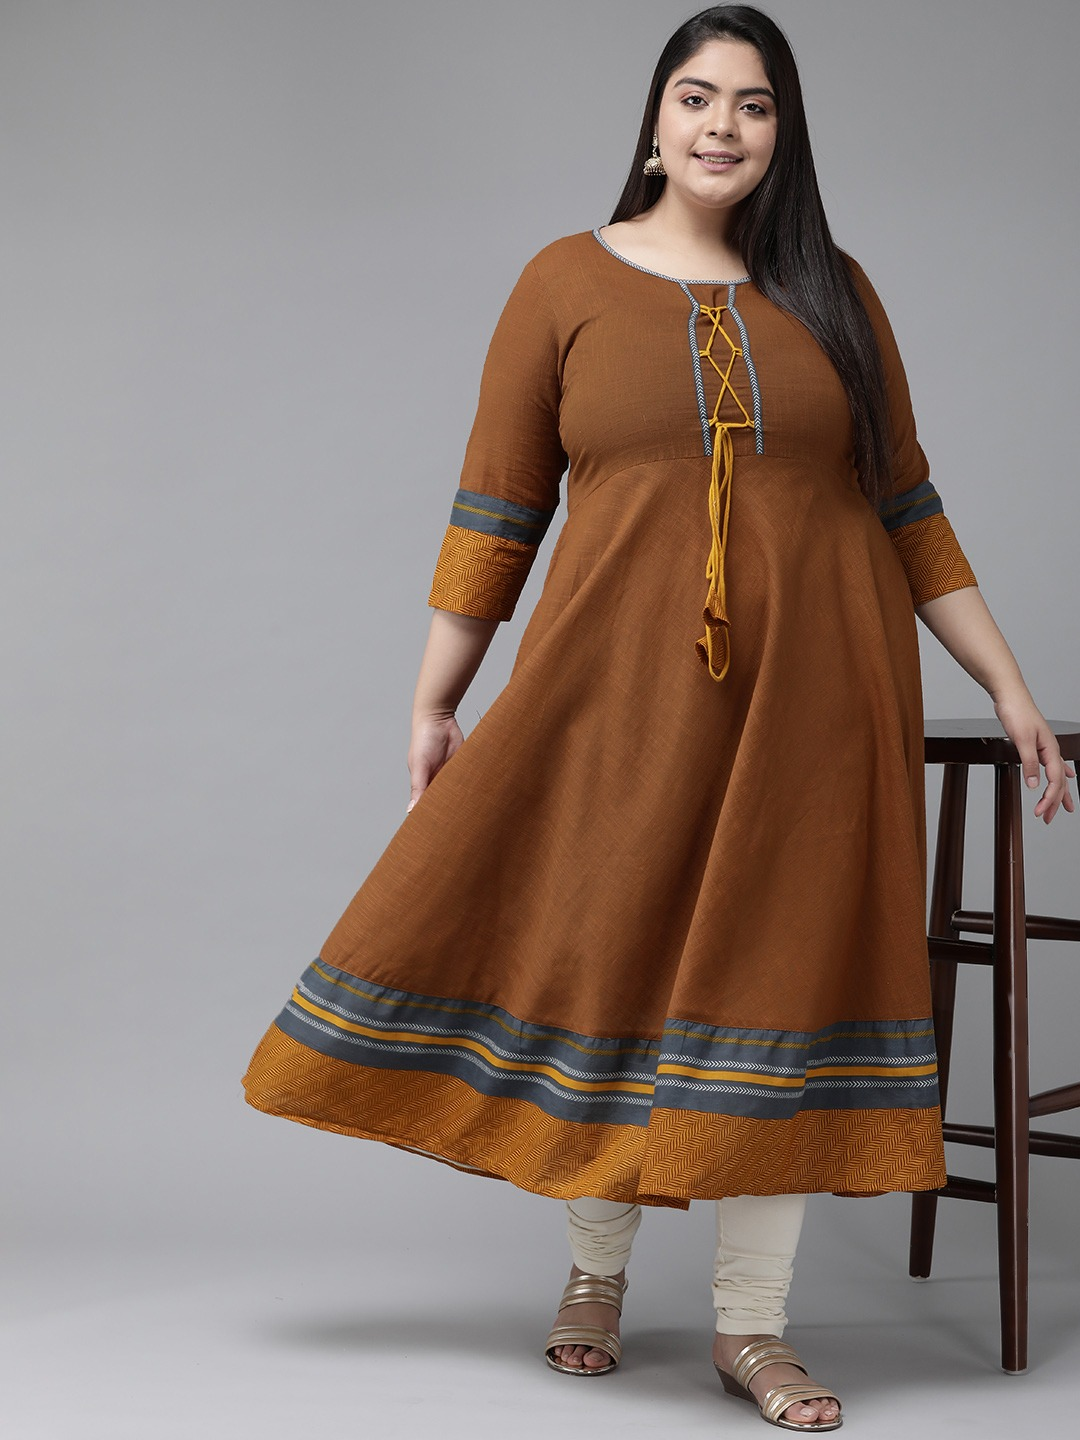 YASH GALLERY Women's Plus Size Cotton  Anarkali Kurti (Brown)